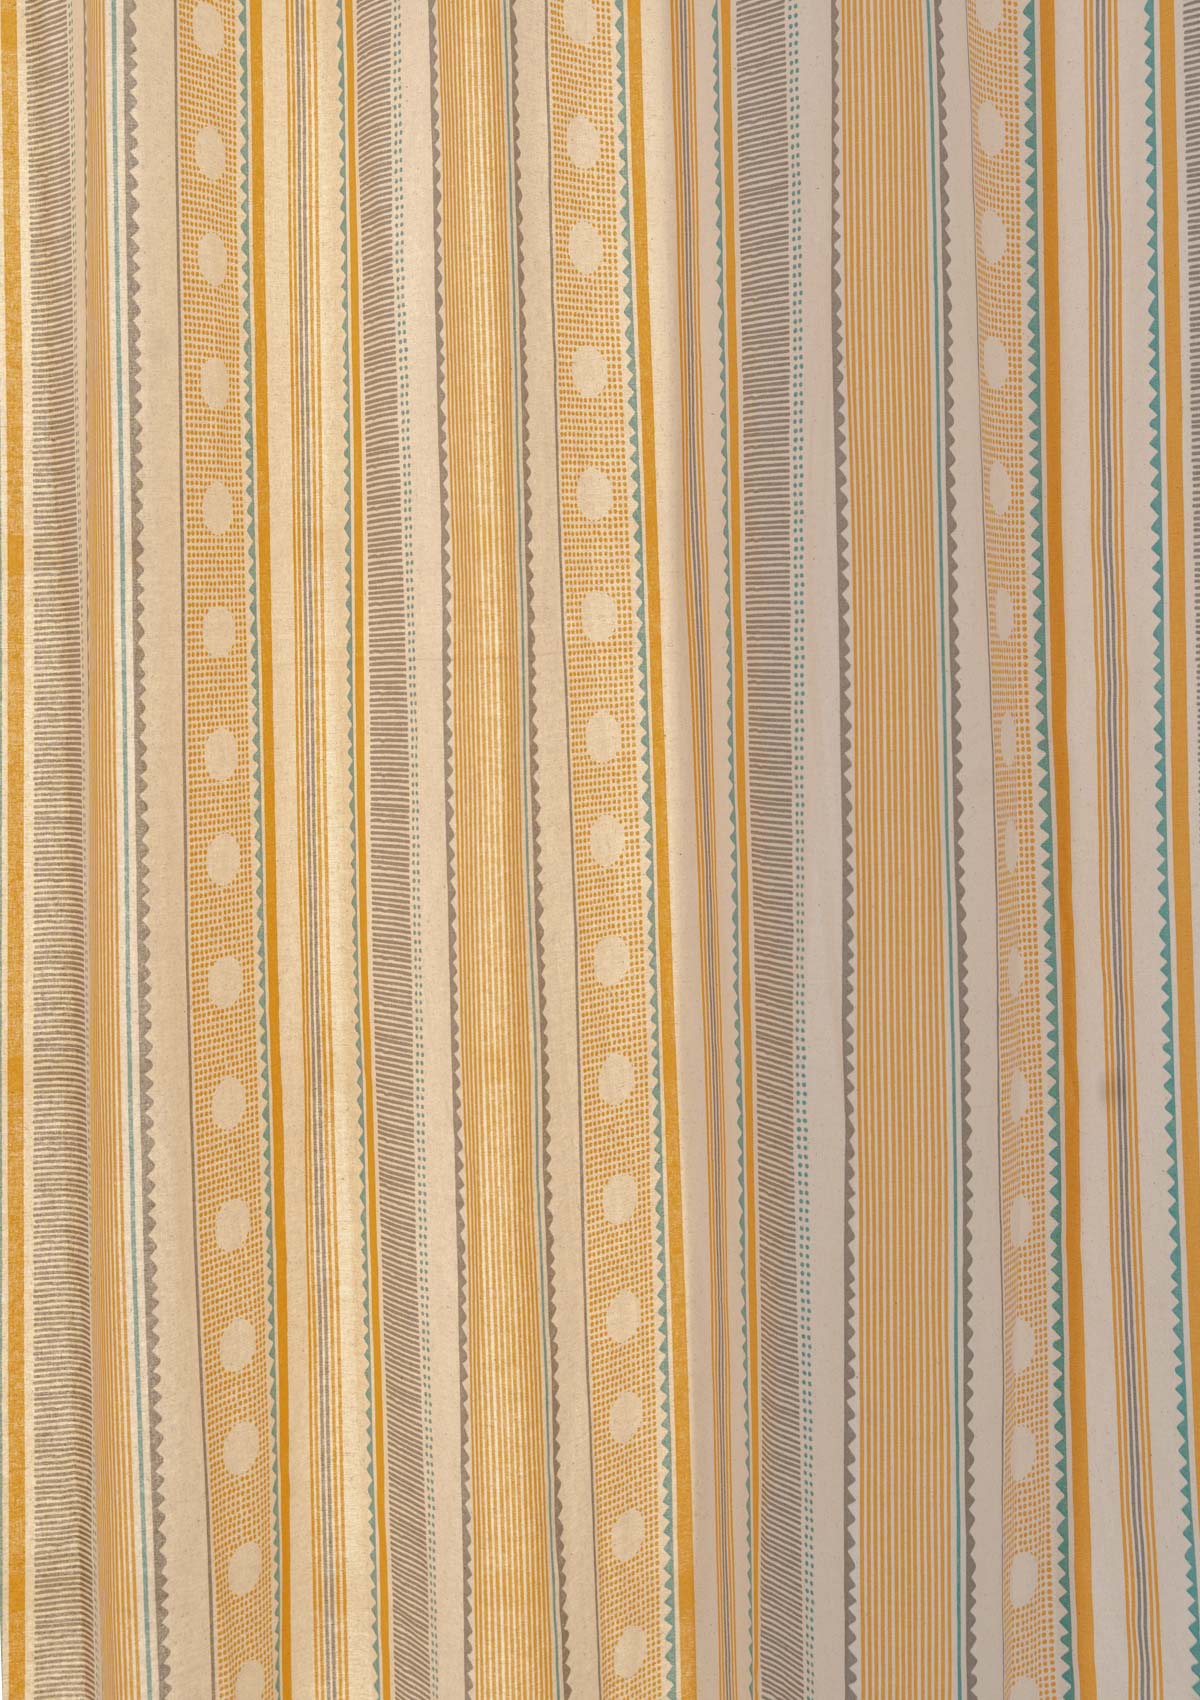 Buru 100% cotton boho customisable curtain for living room - Room darkening - Mustard